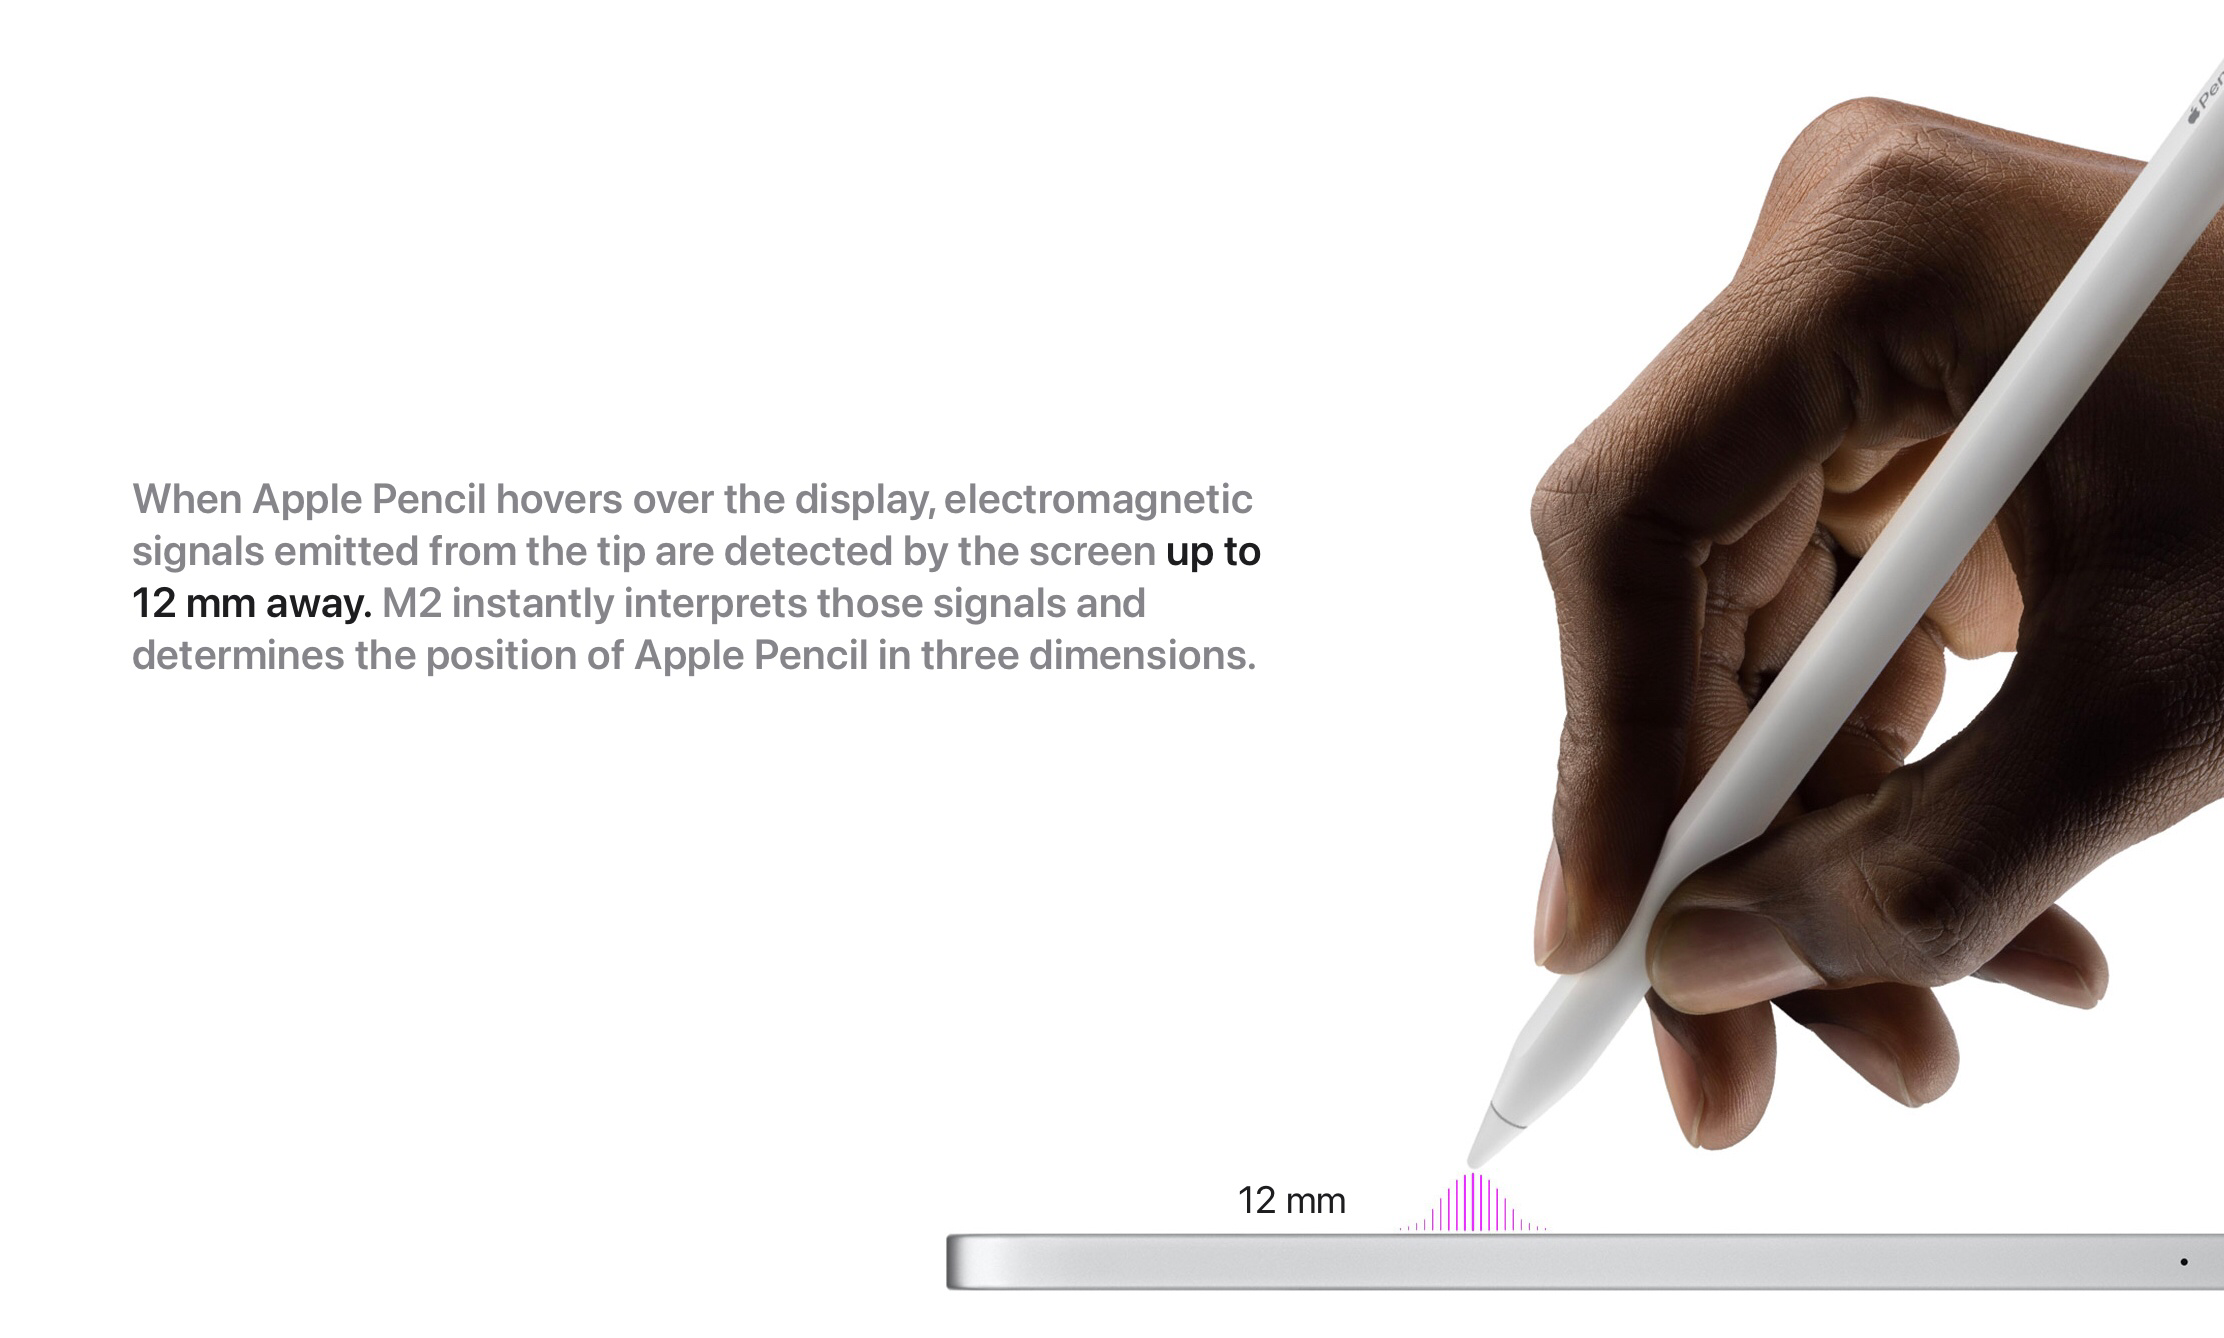 Когда Apple Pencil находится на расстоянии около 12мм от экрана нового iPad Pro, он уже начинает опознавать местность для работы и даже выполняет функции по уточнению или улучшению точности отклика в конкретной области работы карандаша